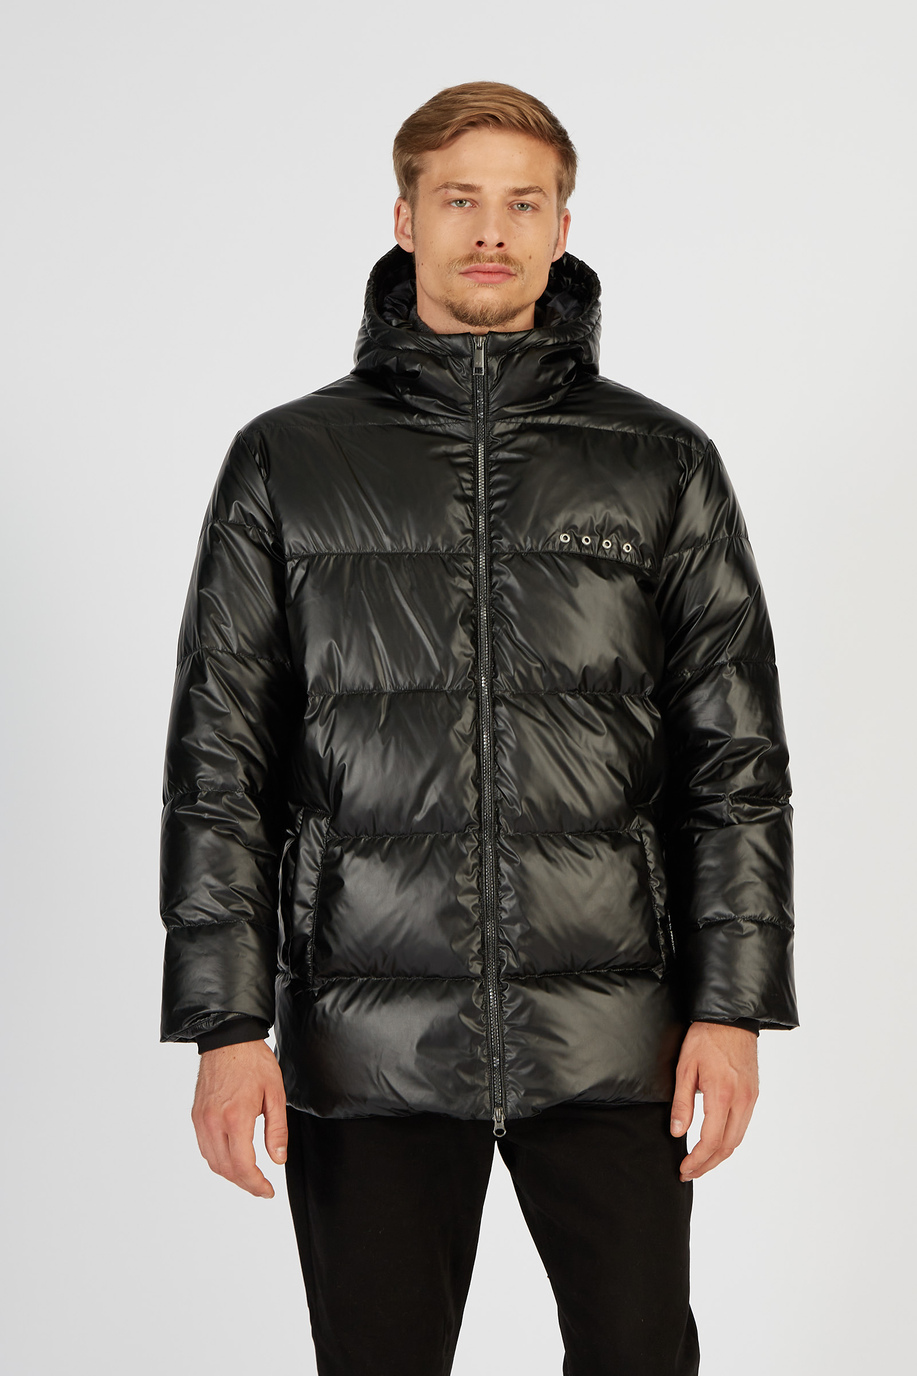 Men’s padded down jacket Jet Set with hood regular fit model - Jet Set | La Martina - Official Online Shop